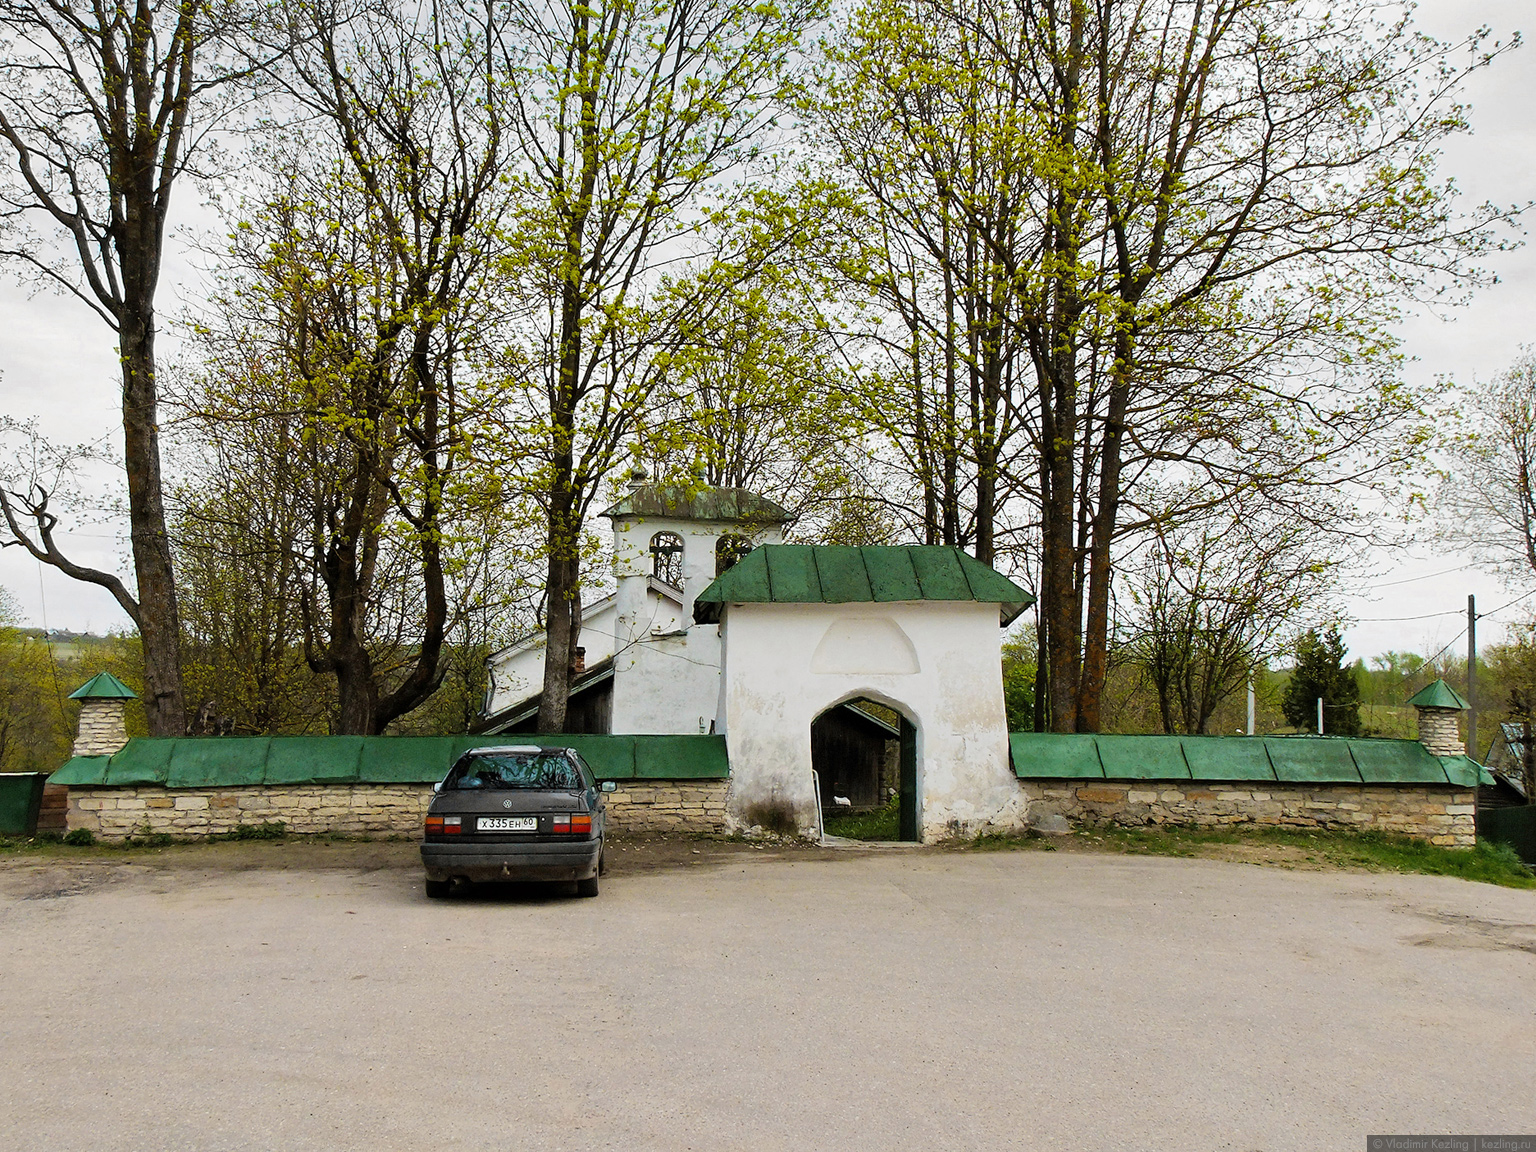 церковь Сергия Радонежского